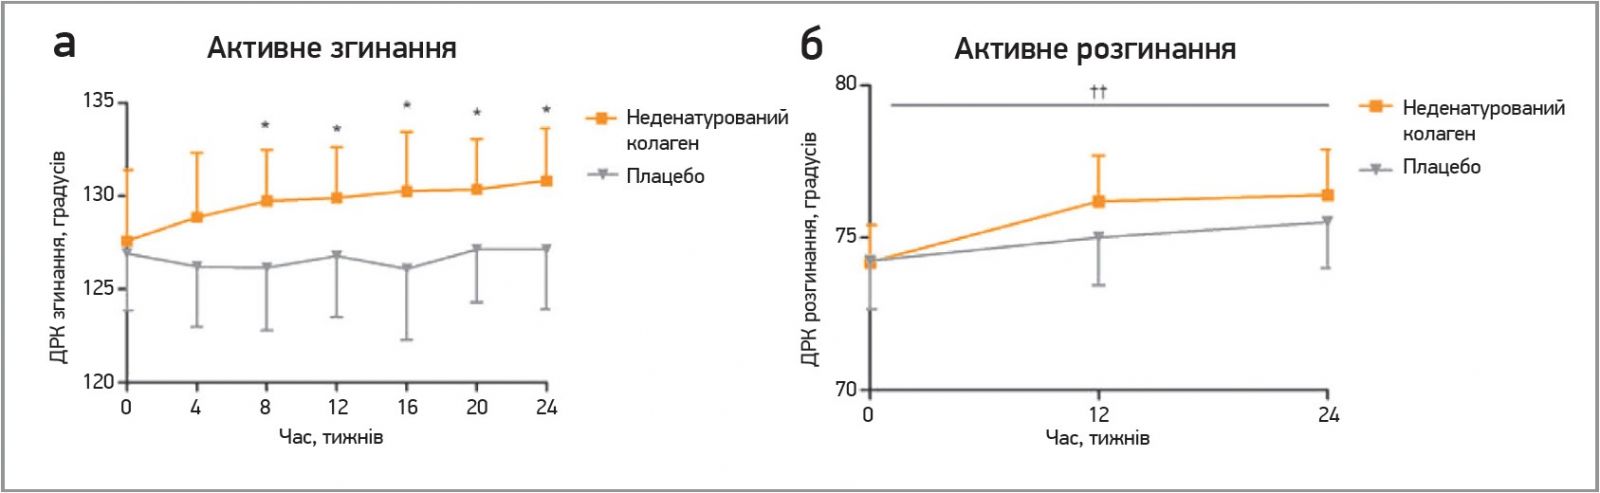 Рис. 1. Розподіл результатів вимірювань діапазону рухів колінного суглоба:  a) активного згинання; б) активного розгинання в групі неденатурованого колагену порівняно  з групою плацебо протягом дослідження